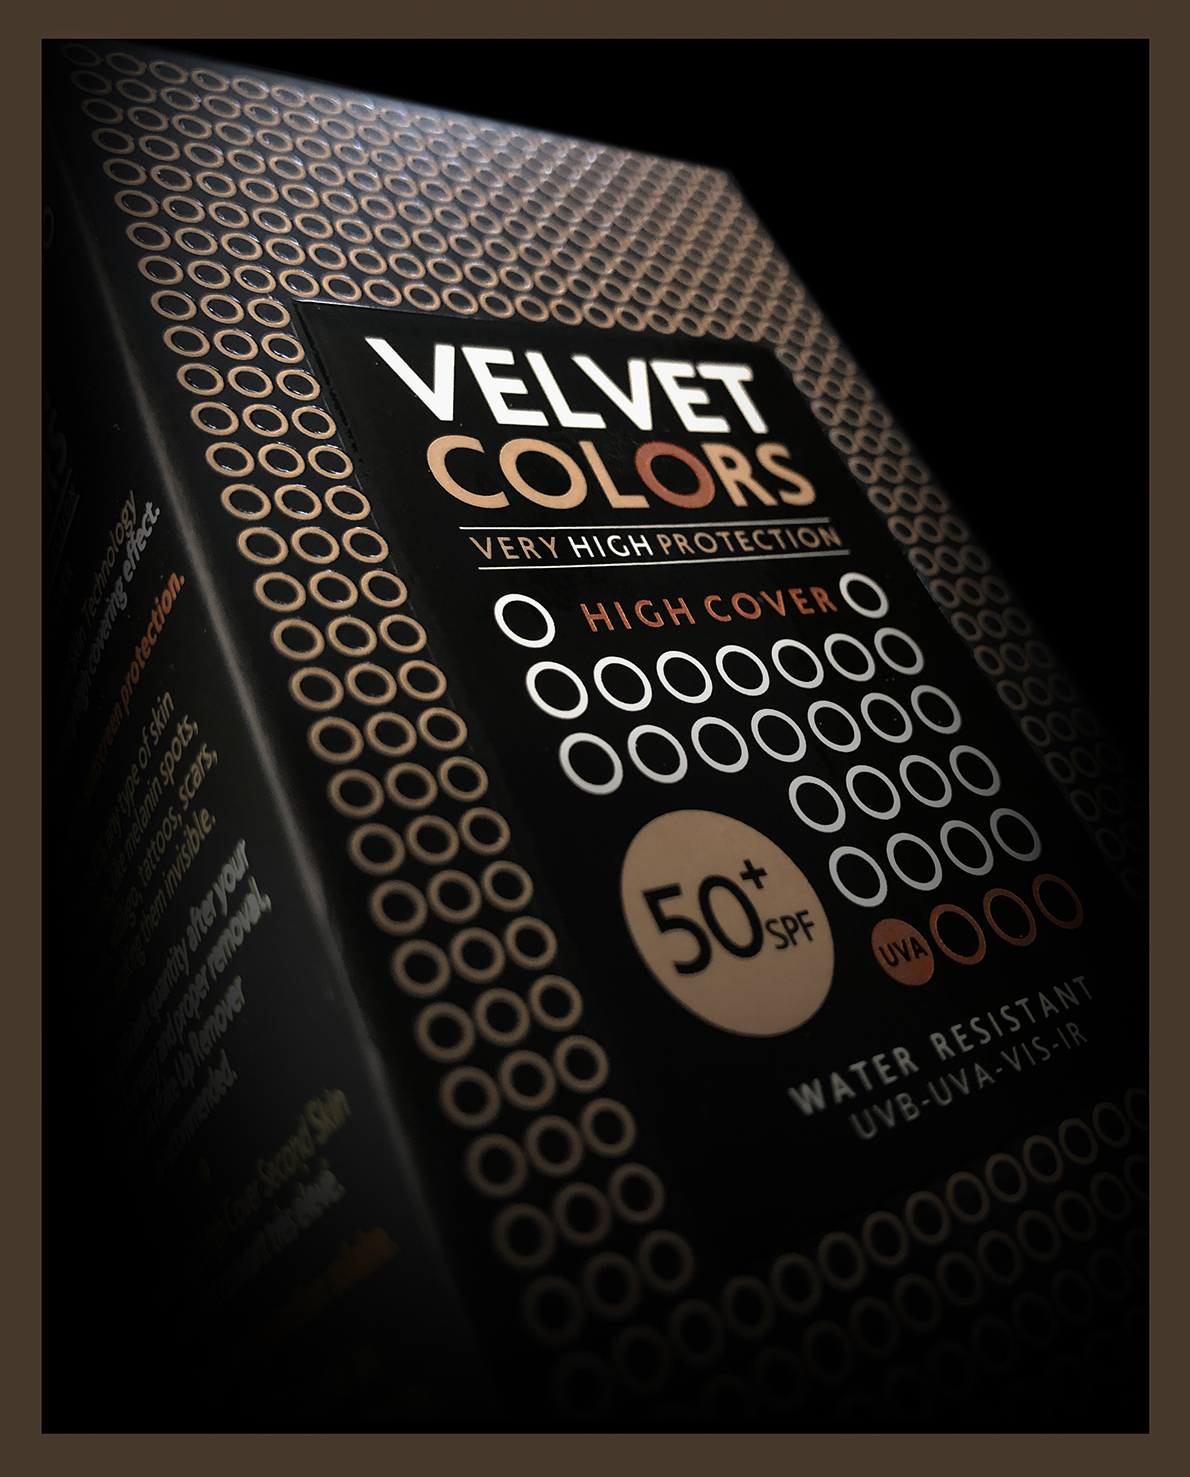 Velvet Colors Branding and Packaging Design